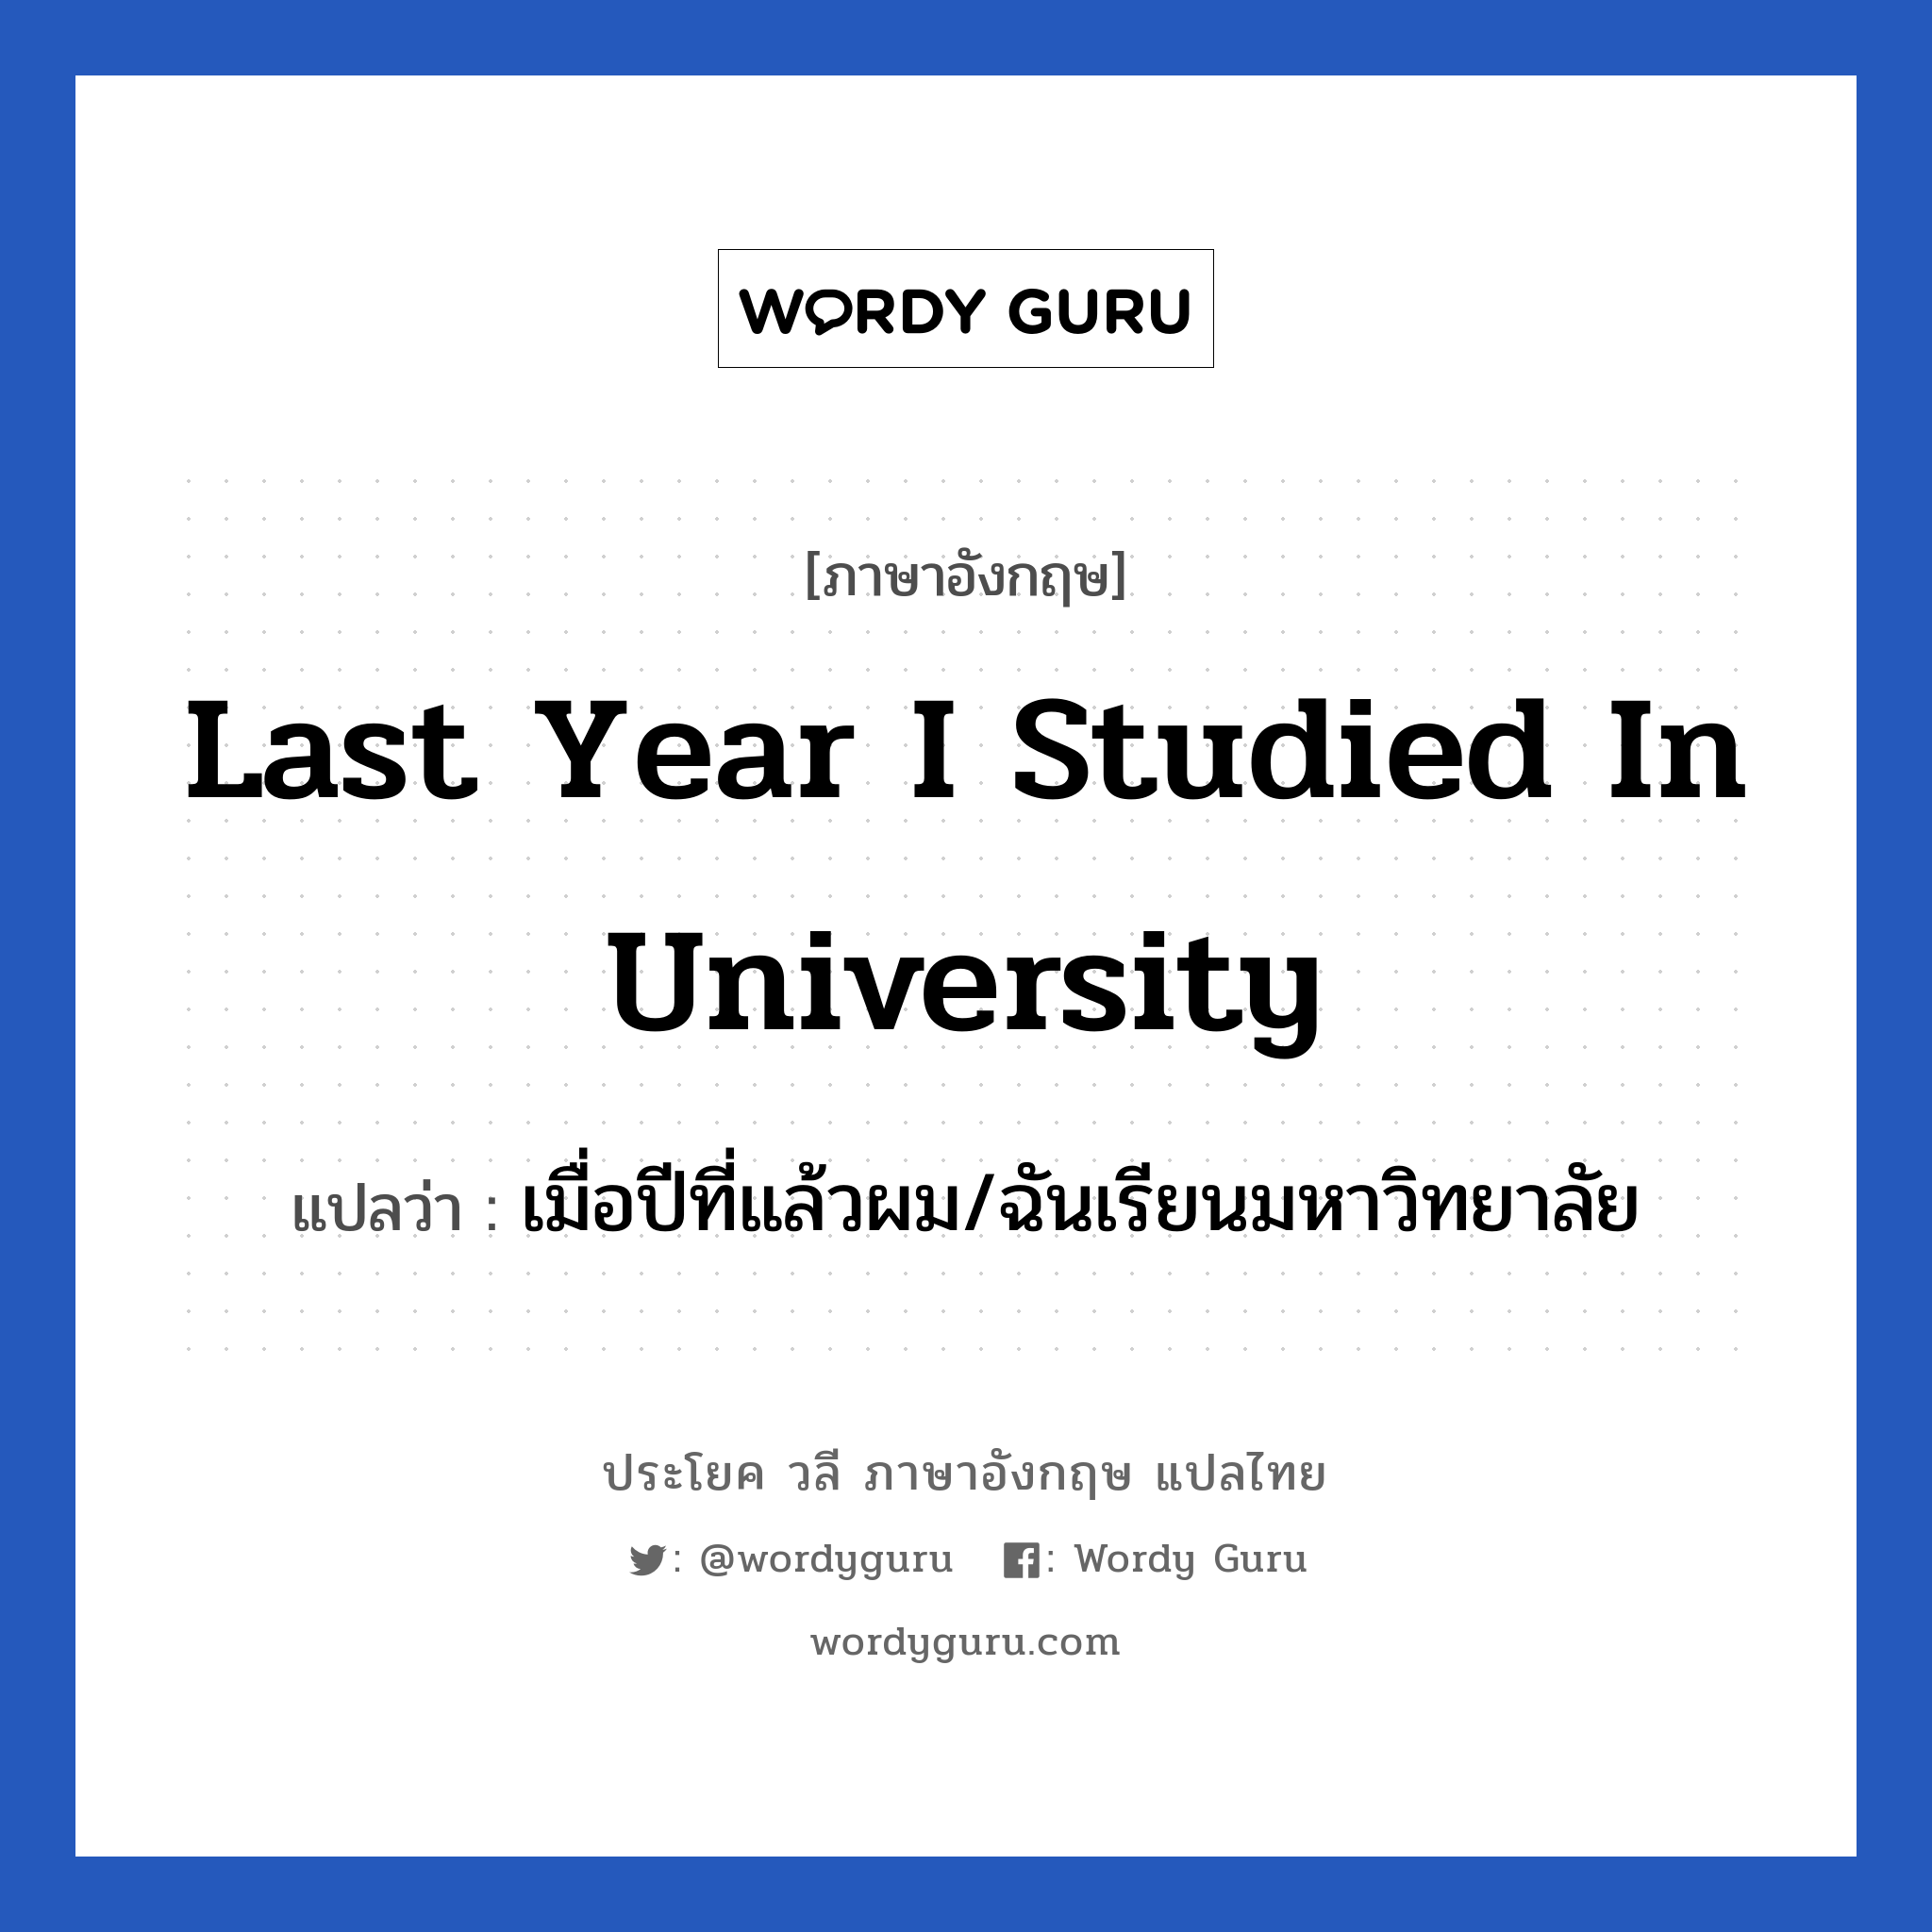 Last year I studied in university แปลว่า?, วลีภาษาอังกฤษ Last year I studied in university แปลว่า เมื่อปีที่แล้วผม/ฉันเรียนมหาวิทยาลัย